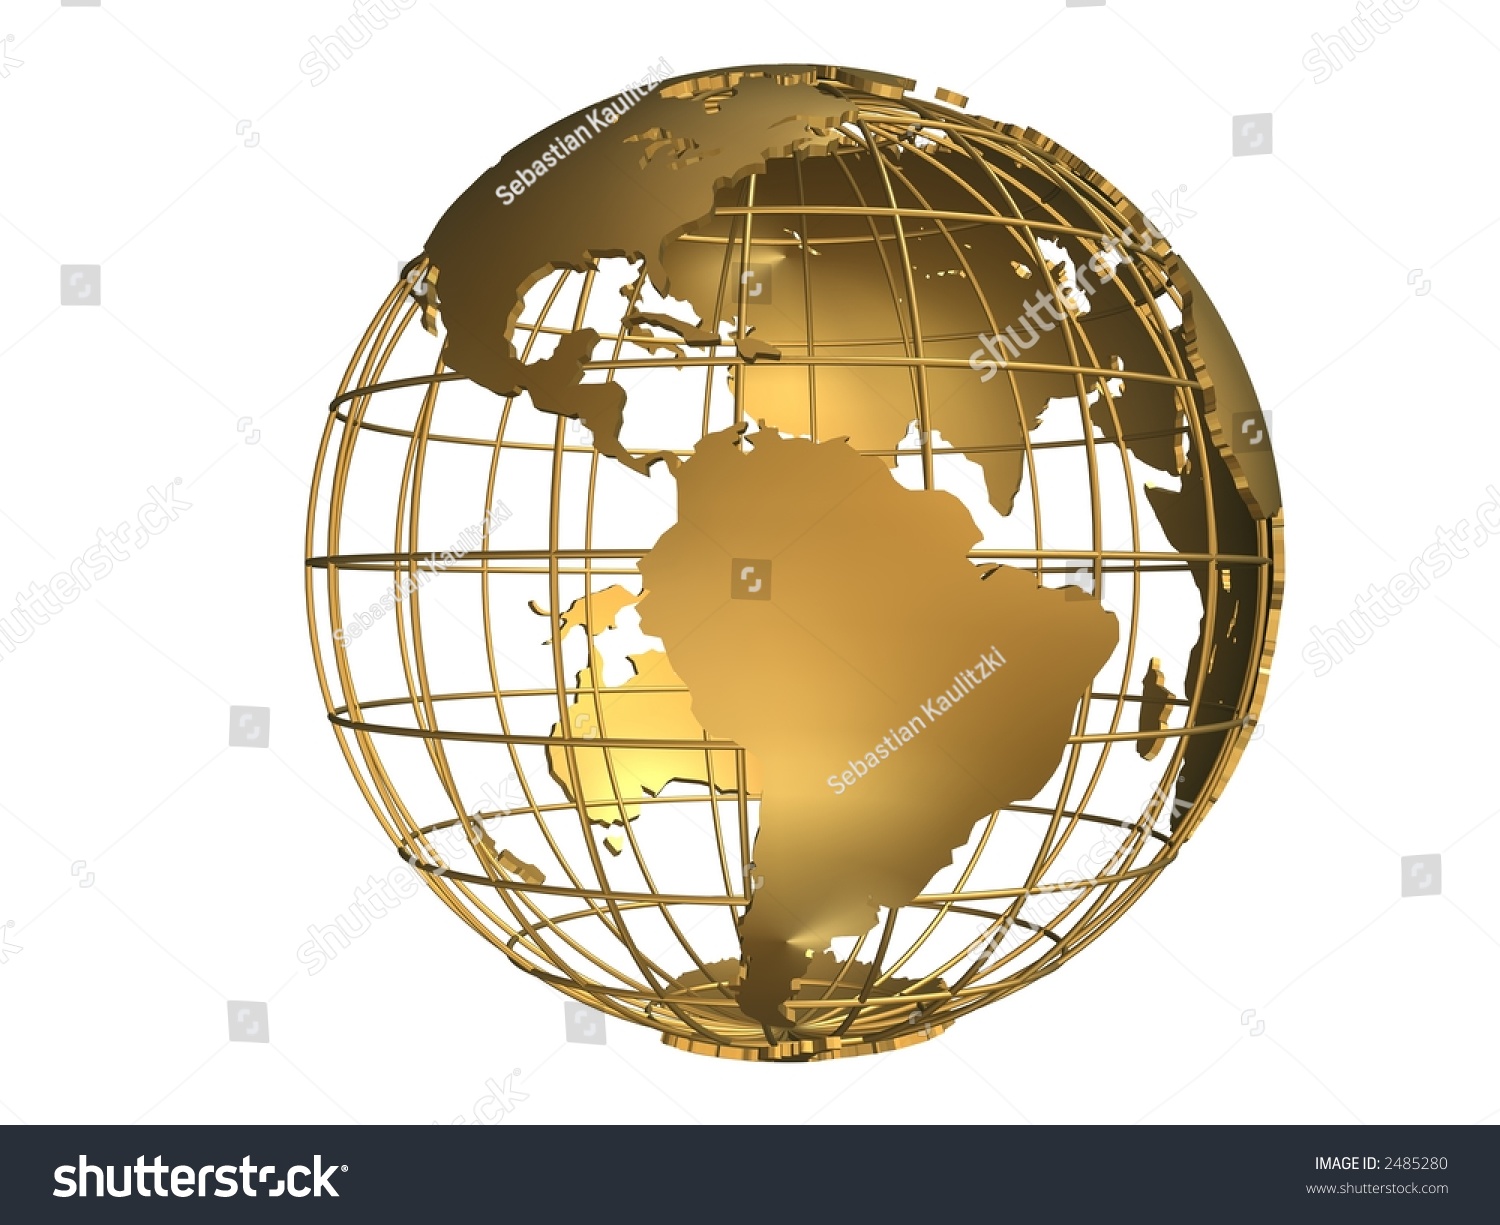 Golden Earth Stock Photo 2485280 : Shutterstock